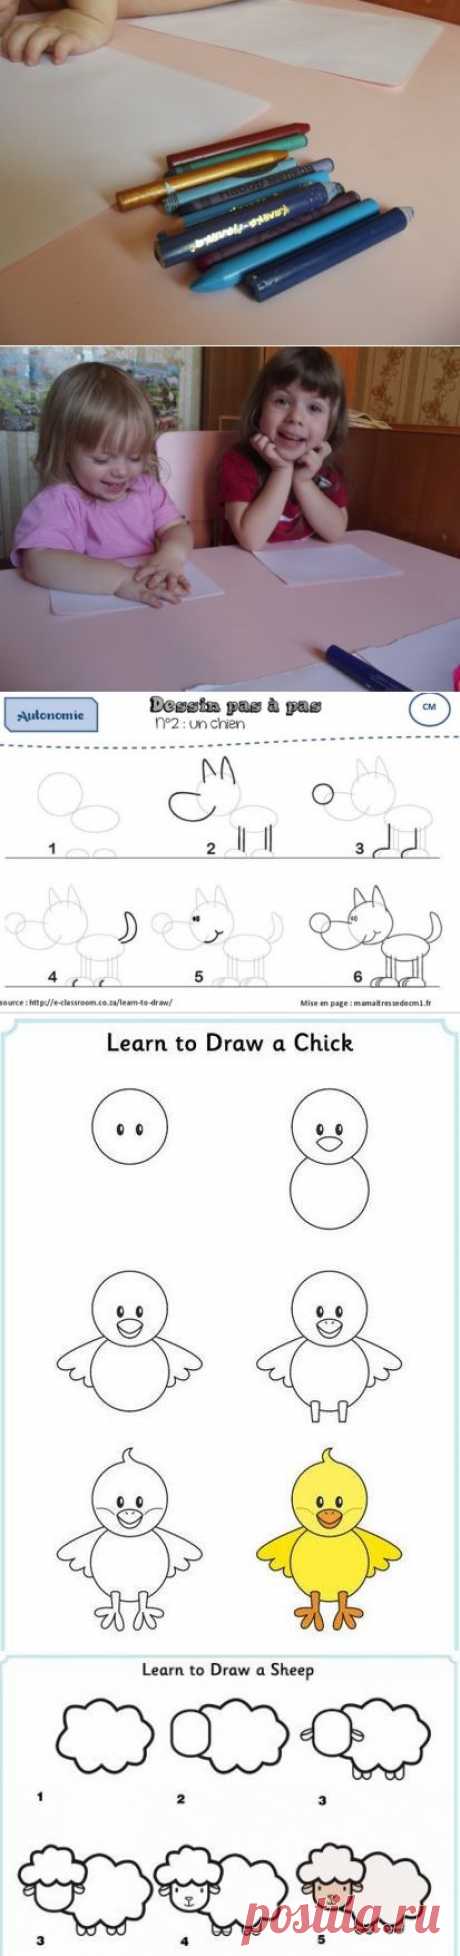 Рисование - Поделки с детьми | Деткиподелки